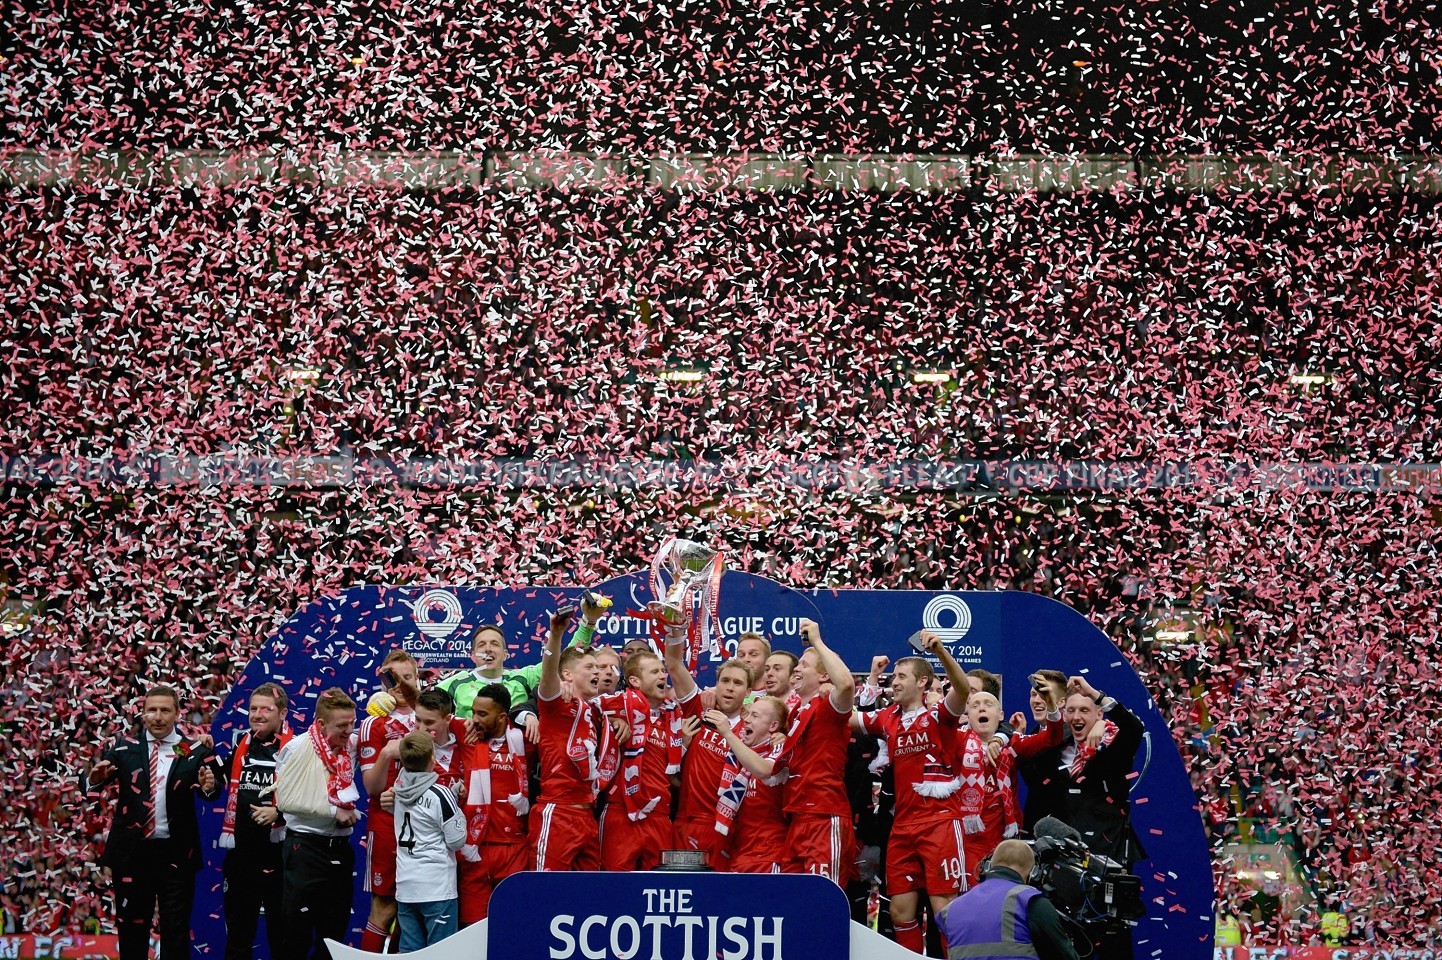 Aberdeen FC celebrate cup success